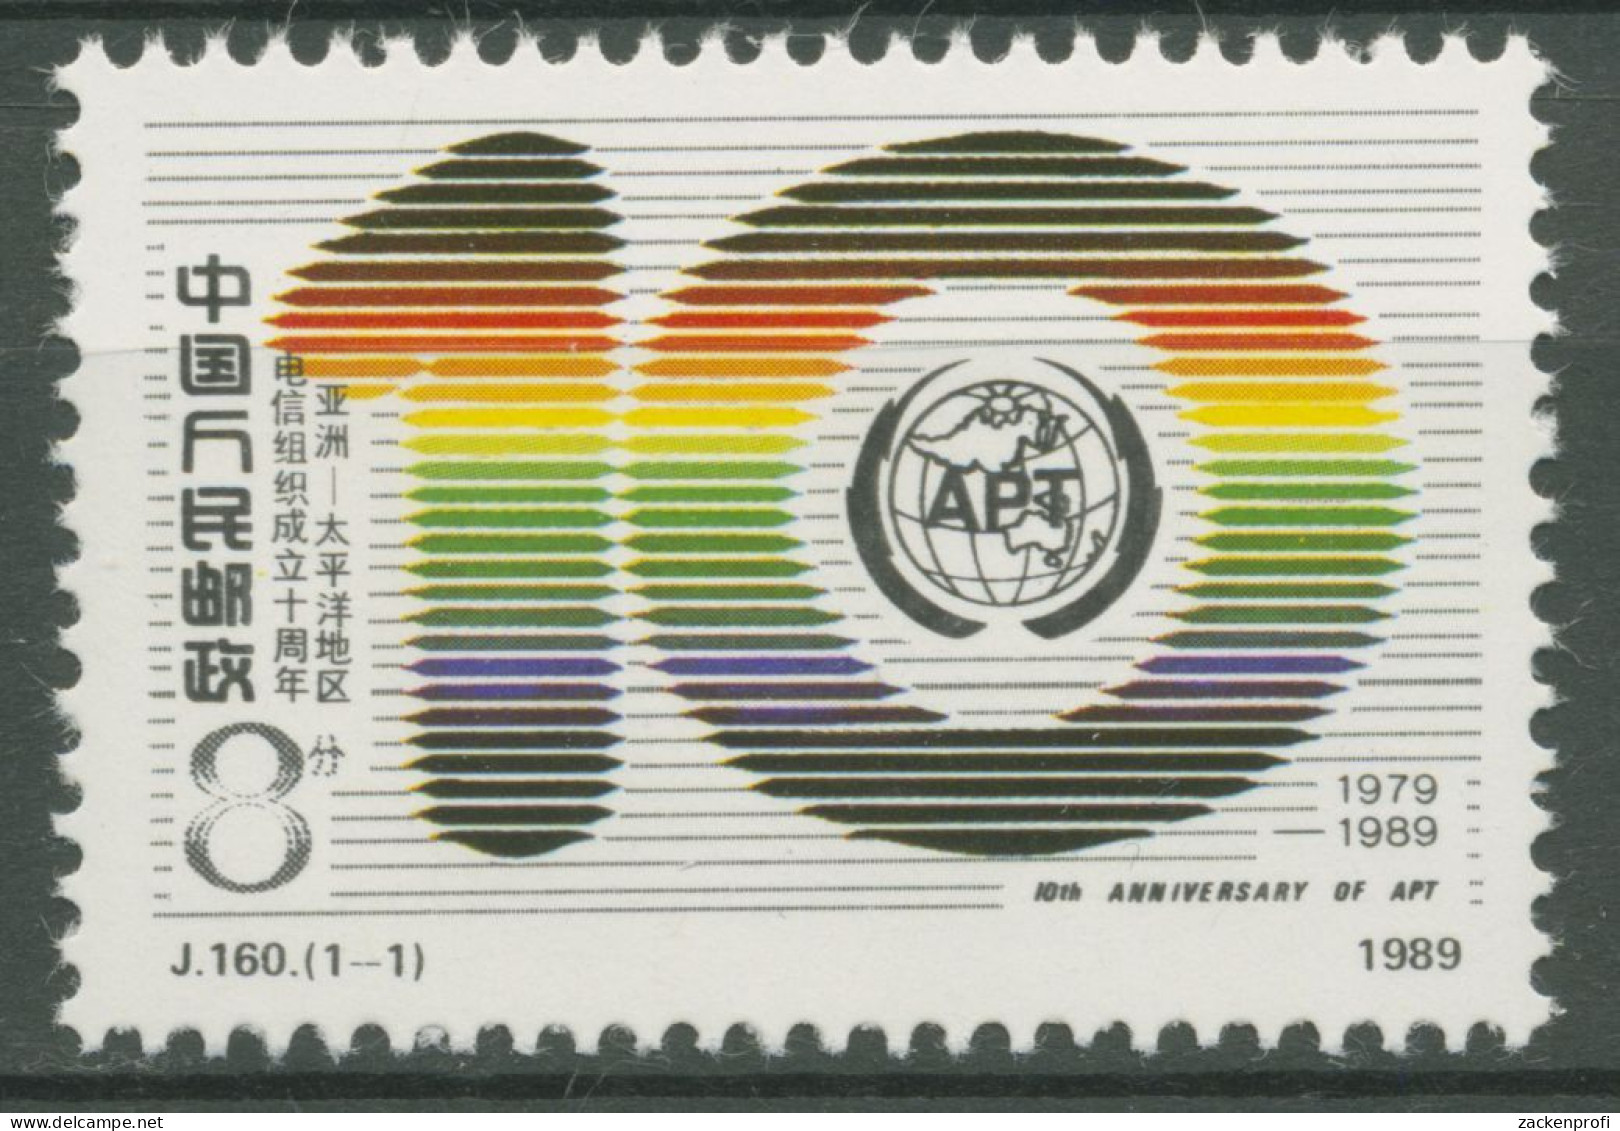 China 1989 Asiatisch-Pazifische Fernmeldeunion 2243 Postfrisch - Unused Stamps